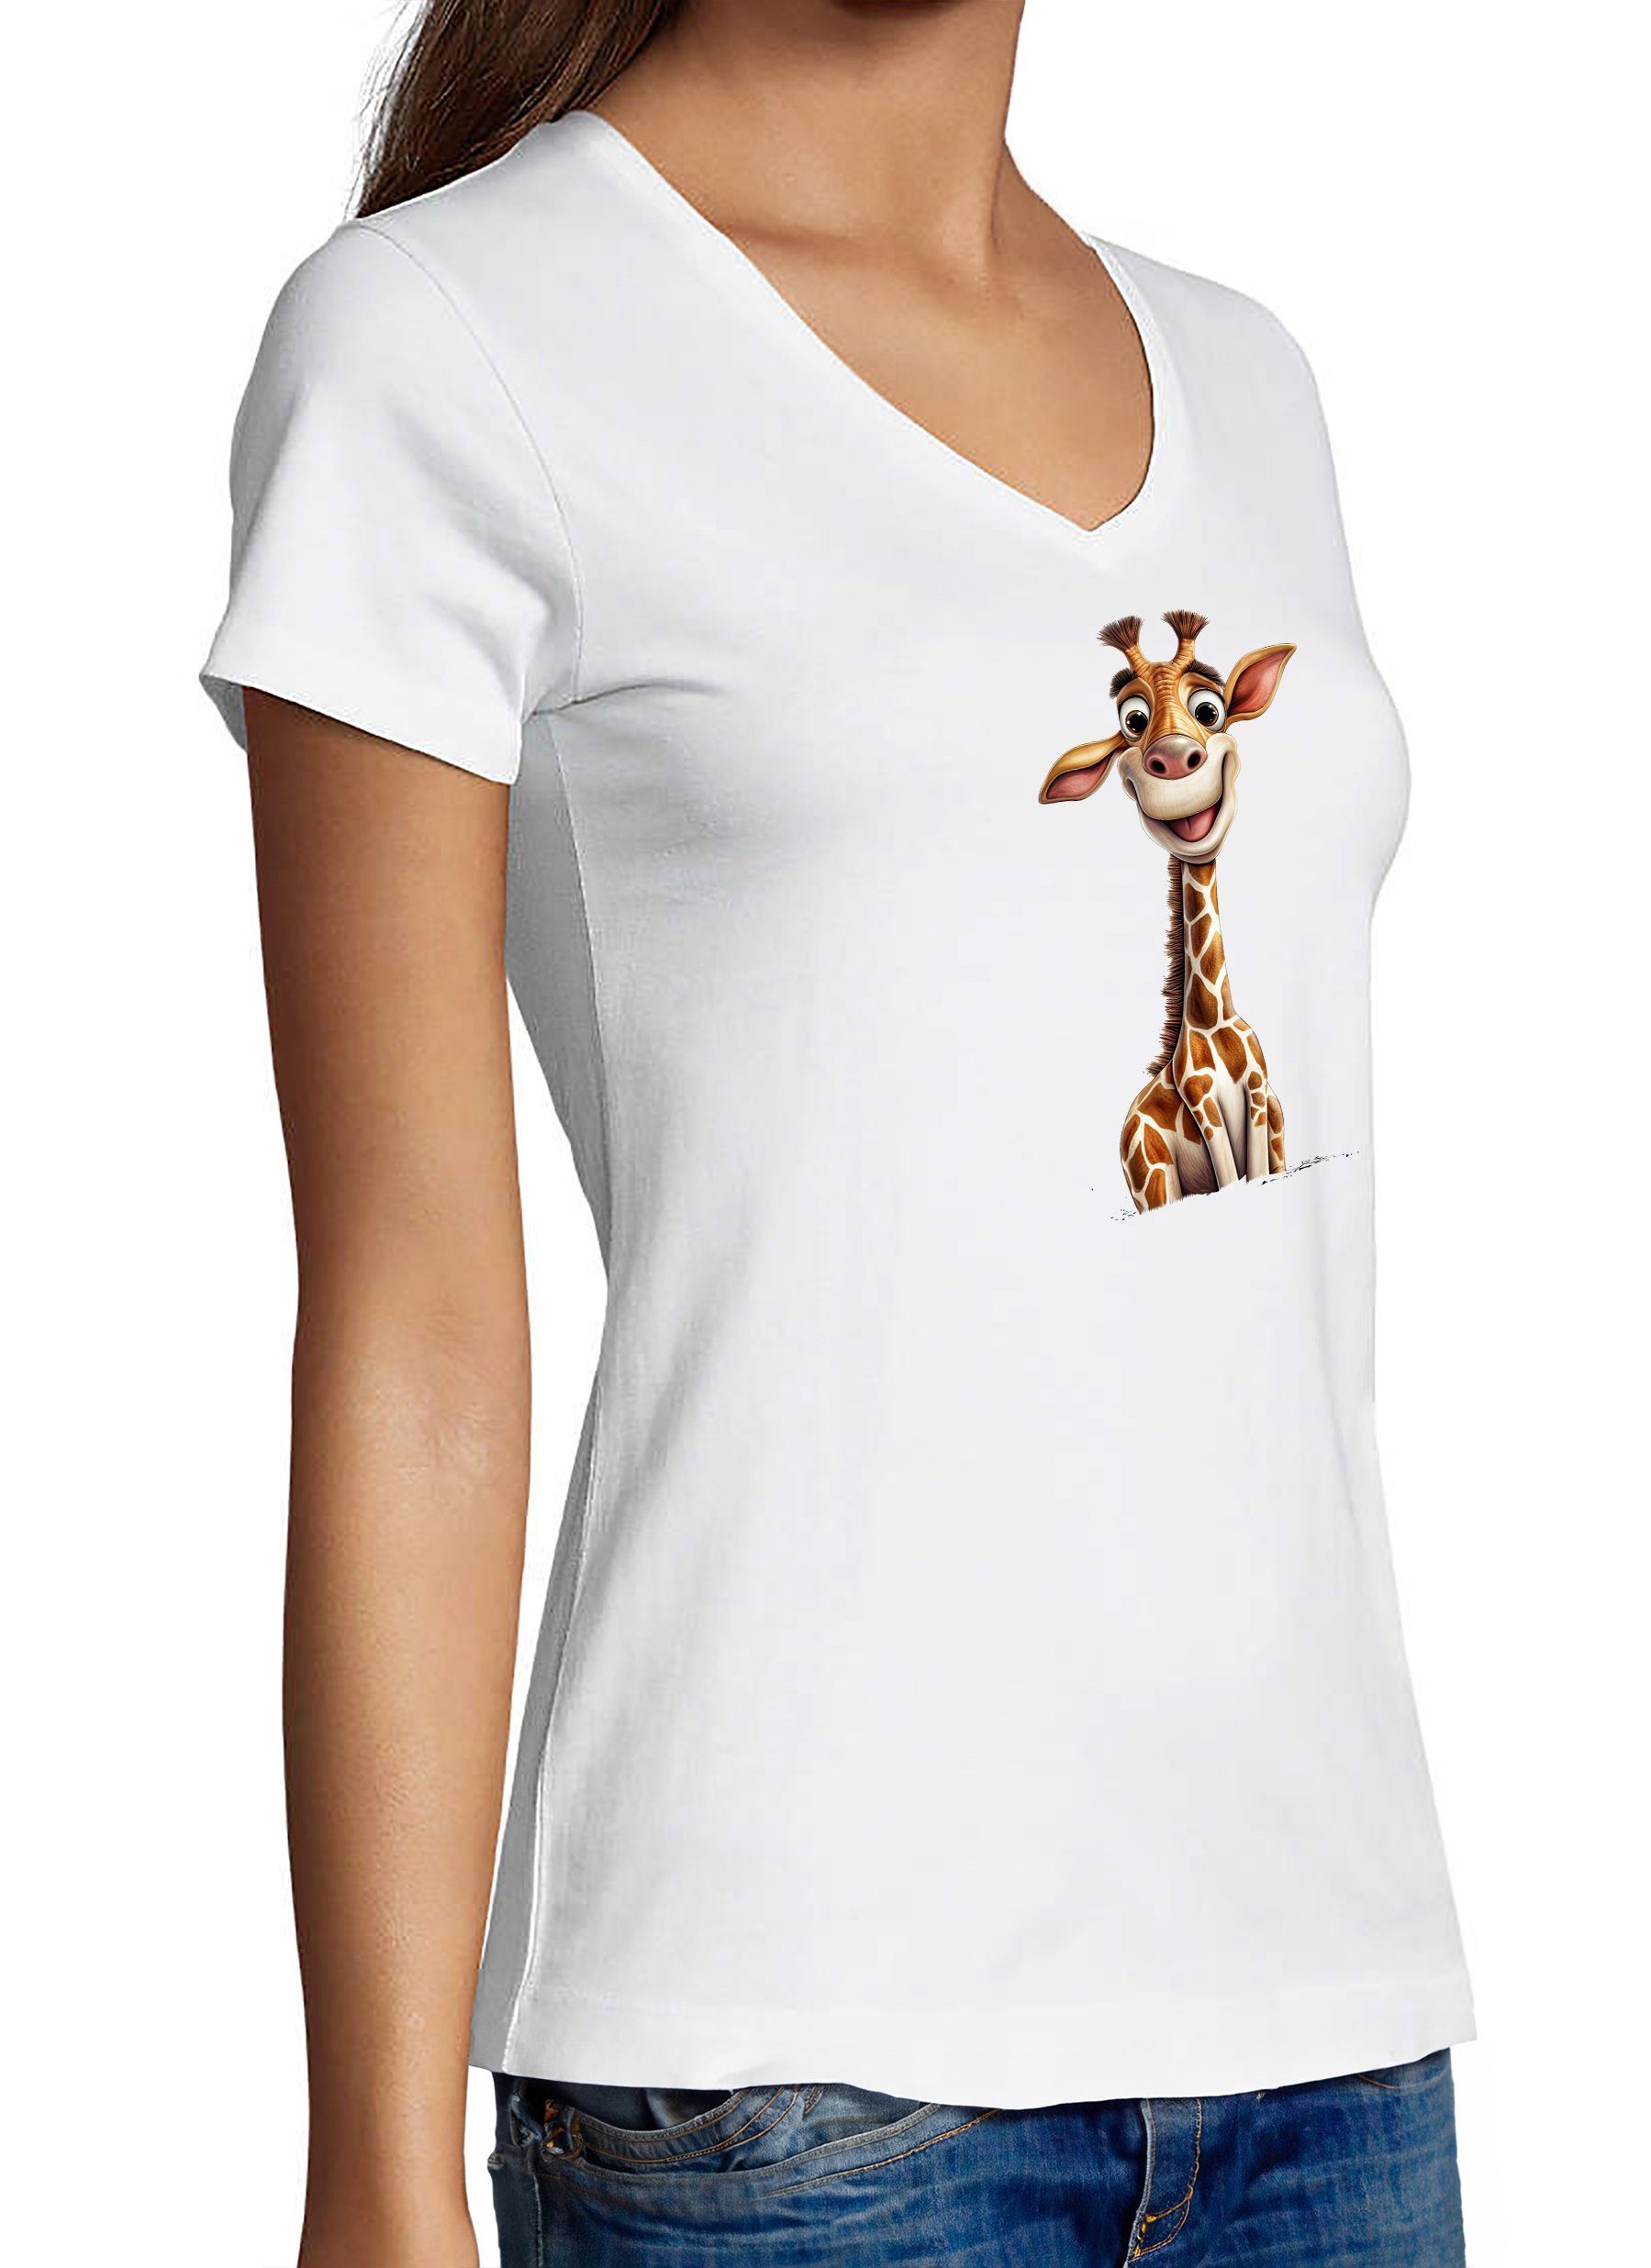 V-Ausschnitt Fit, MyDesign24 weiss - Baby Wildtier Giraffe Slim Shirt Print mit T-Shirt Damen Aufdruck i273 Baumwollshirt